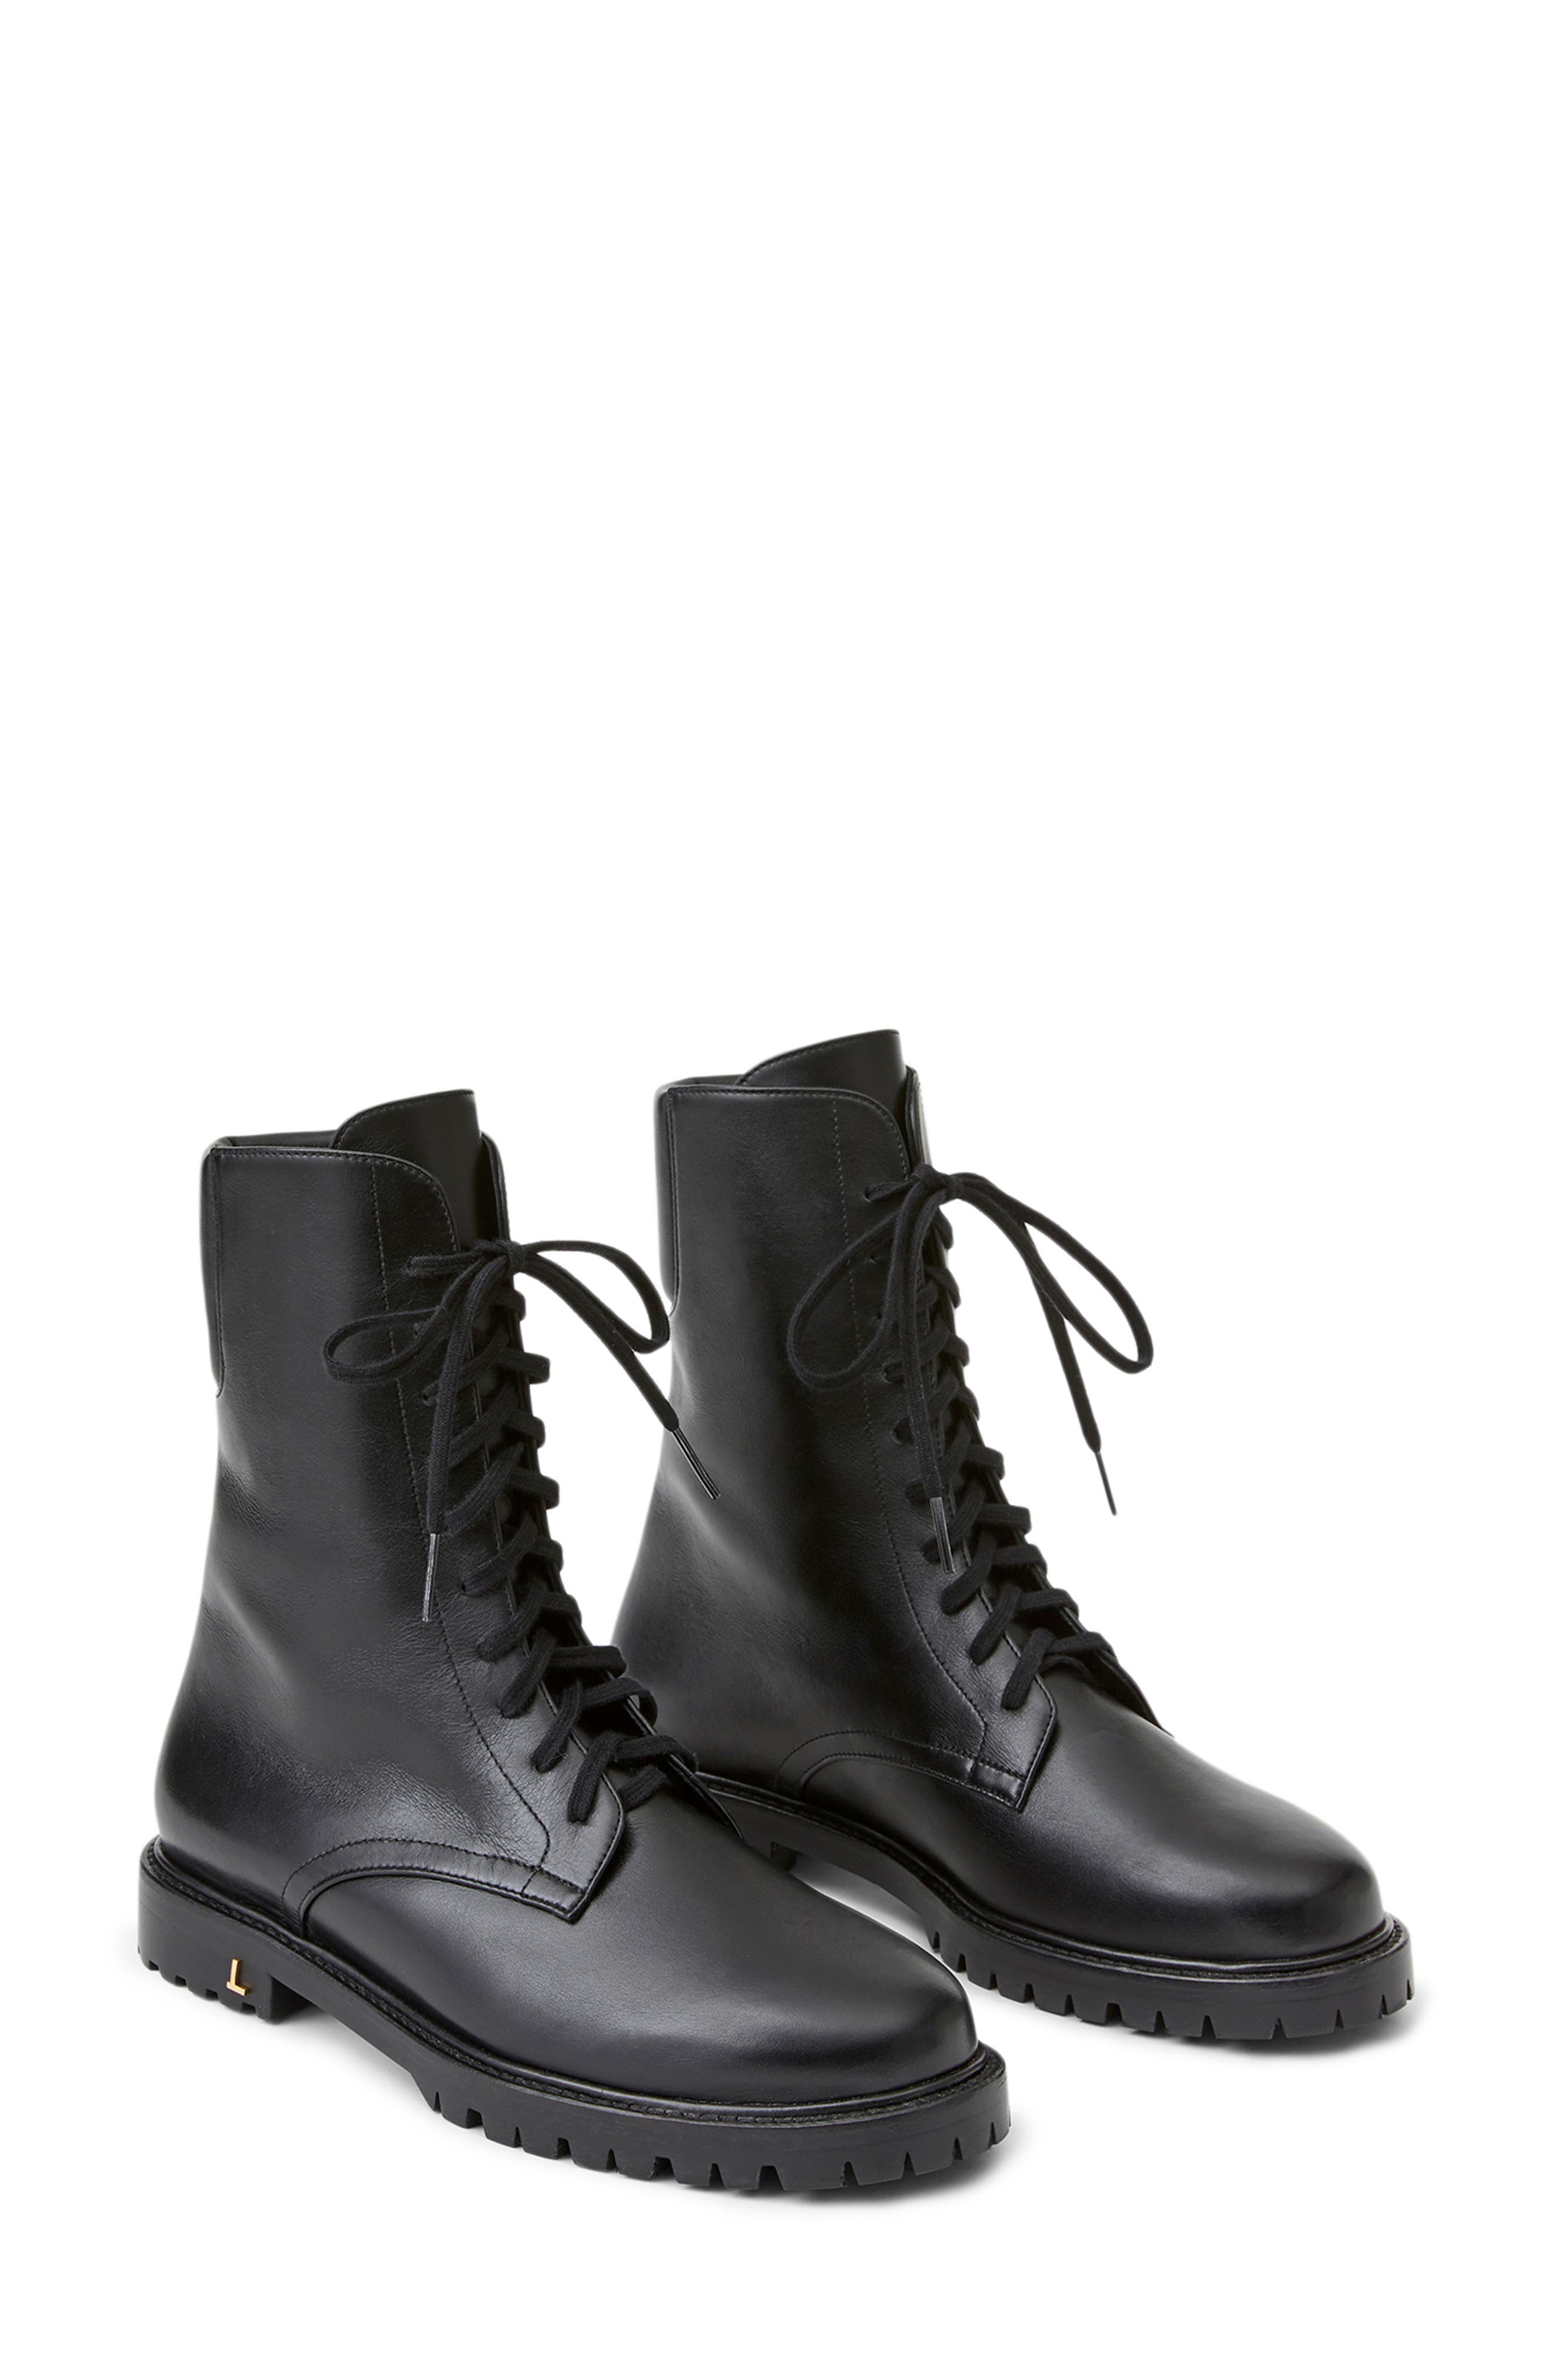 combat designer boots